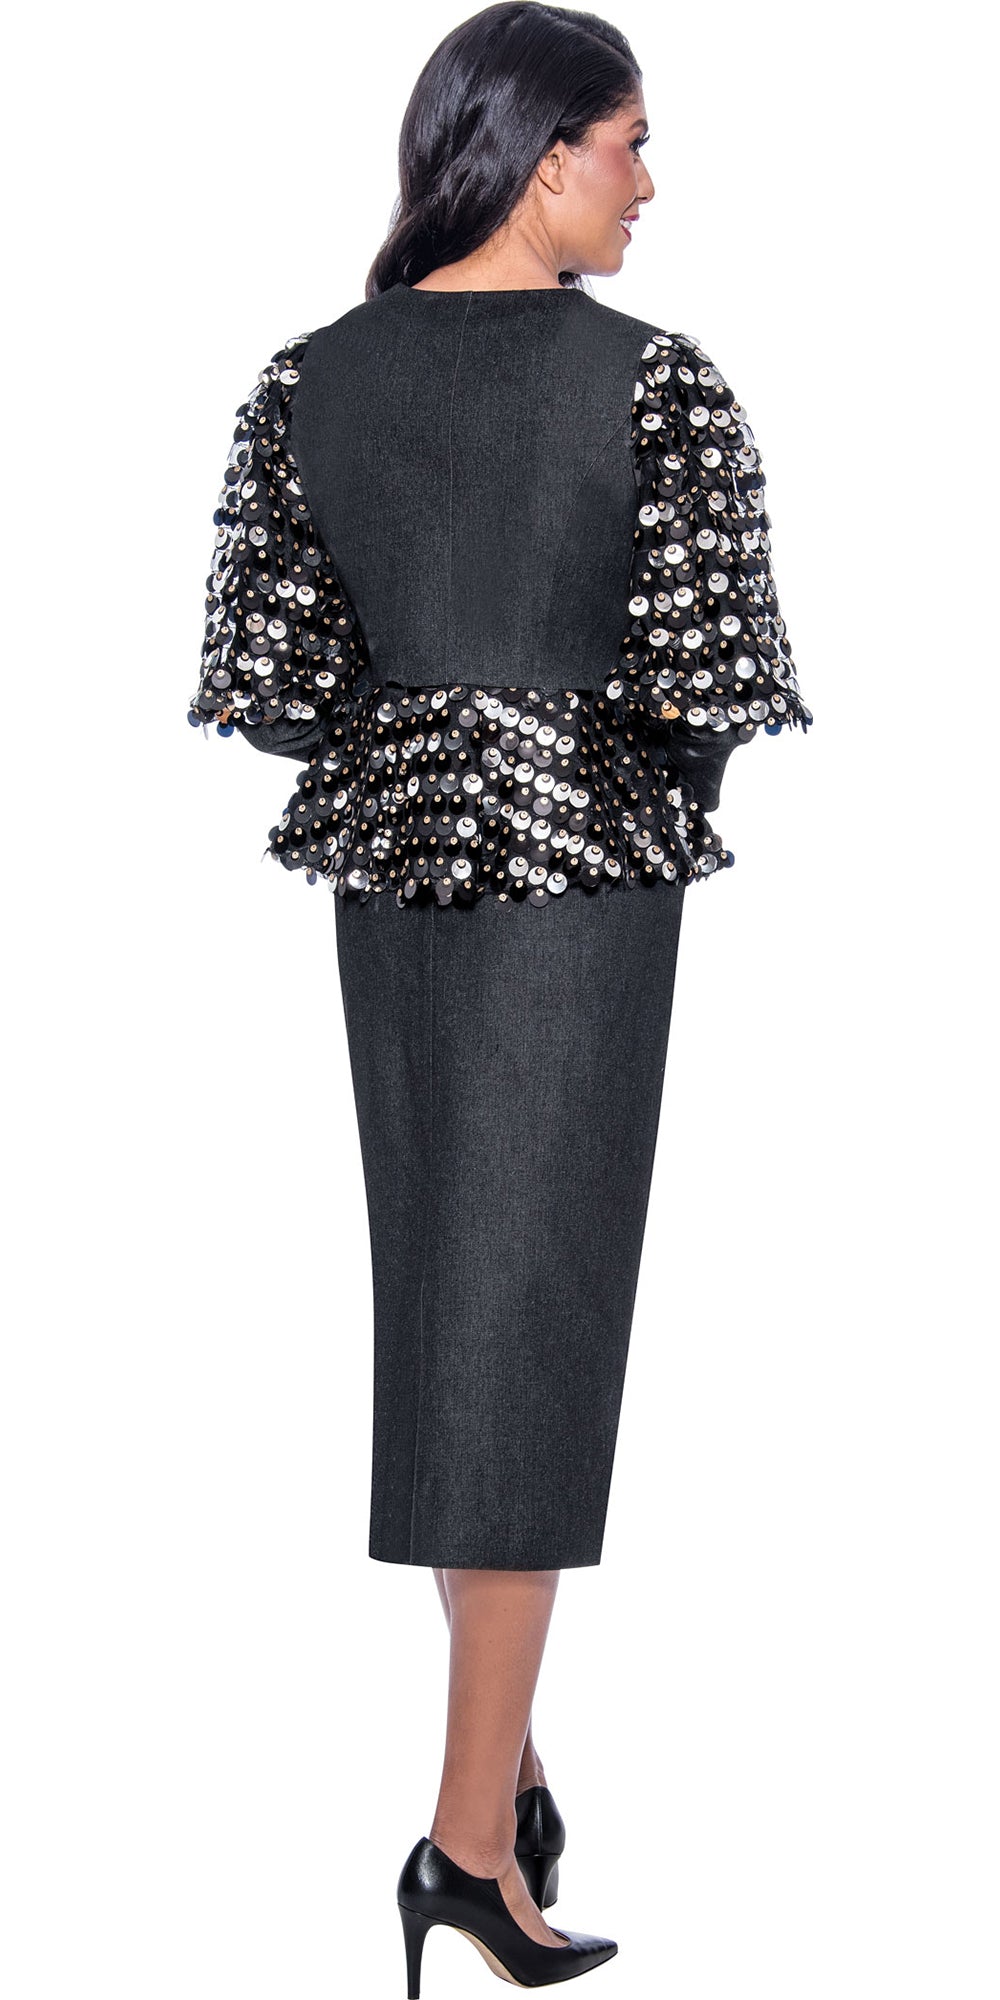 Devine Sport 64042 - Black - Embellished Soft Stretch Denim Skirt Suit